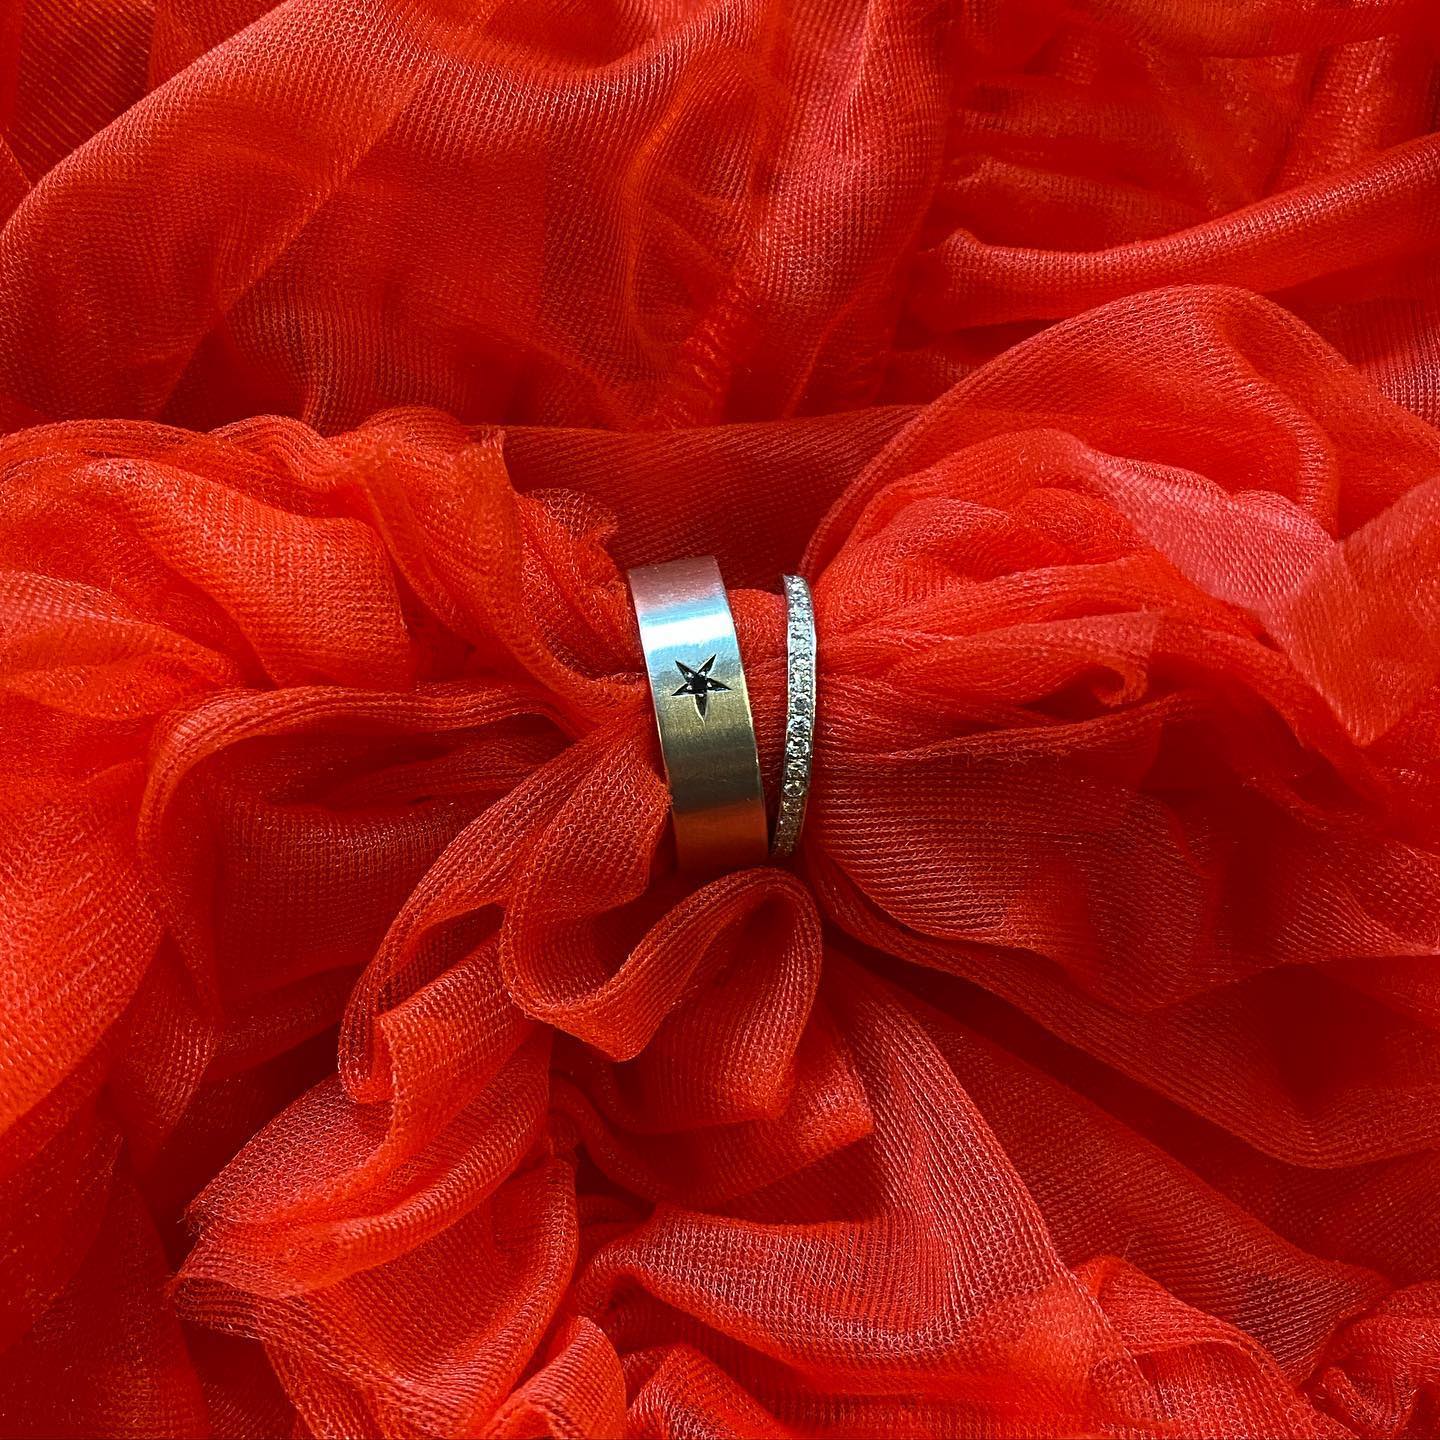 Gentleman ring Ring-14 Karat Gold  or 925 Silver with Black Diamond